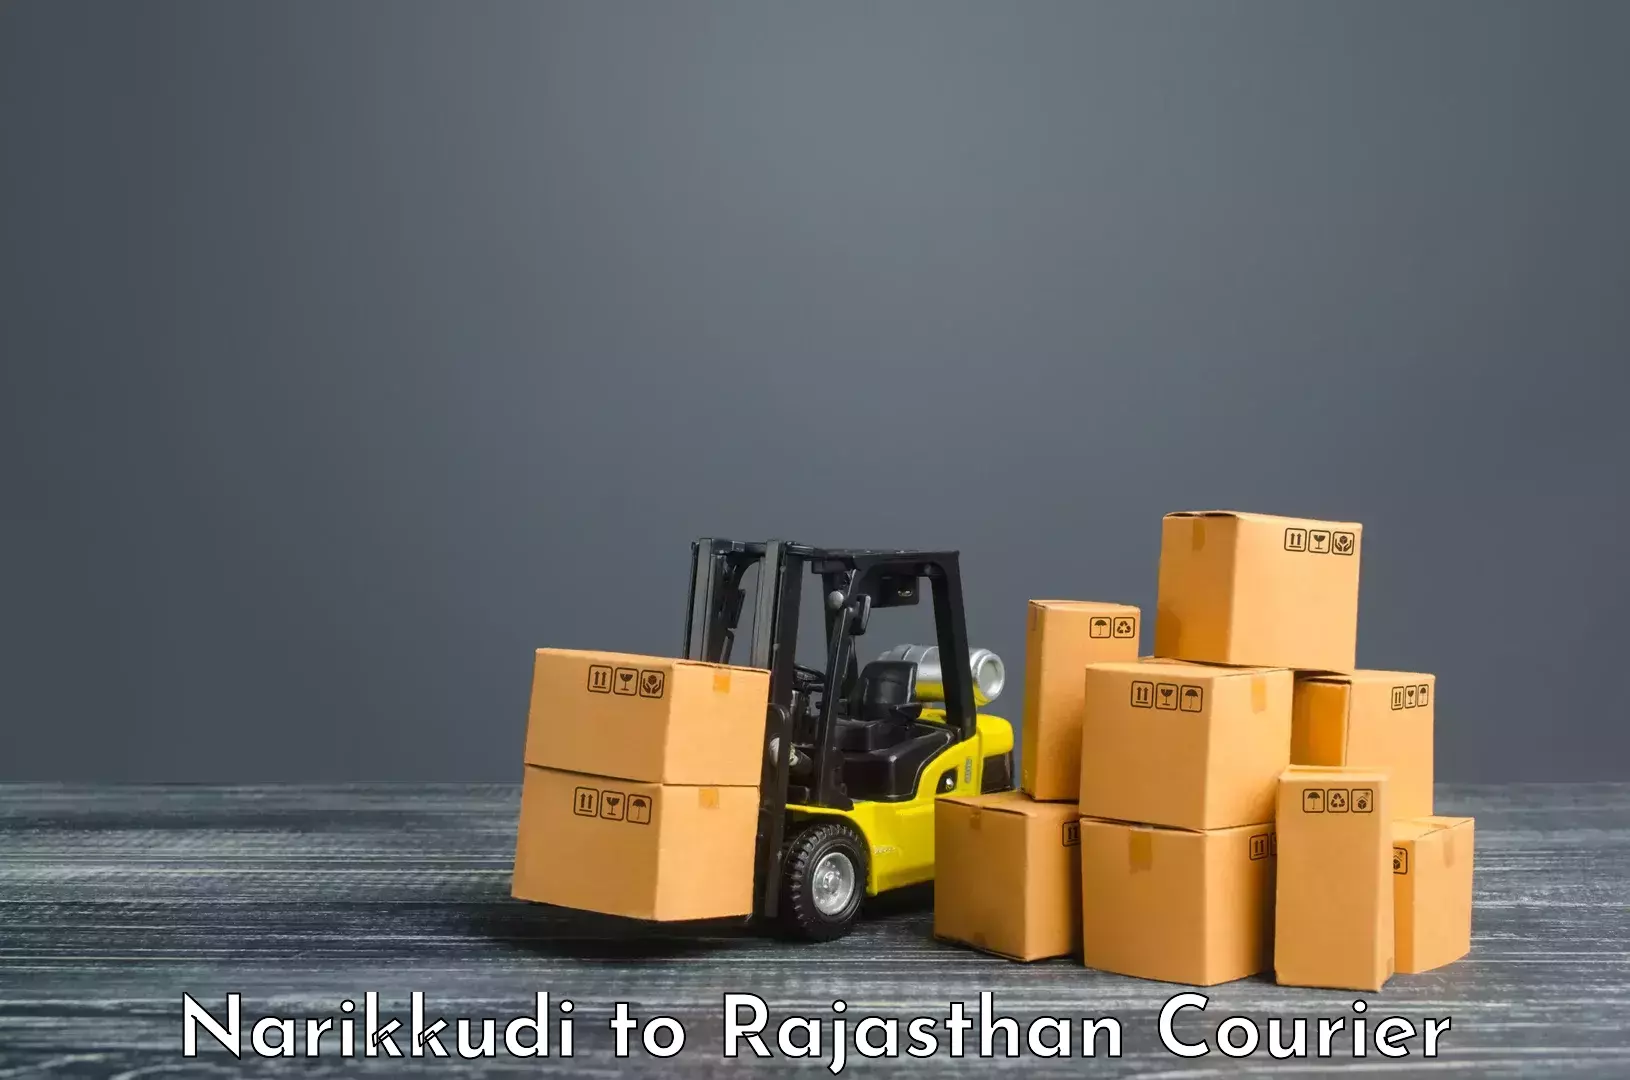 Tracking updates in Narikkudi to Rajasthan